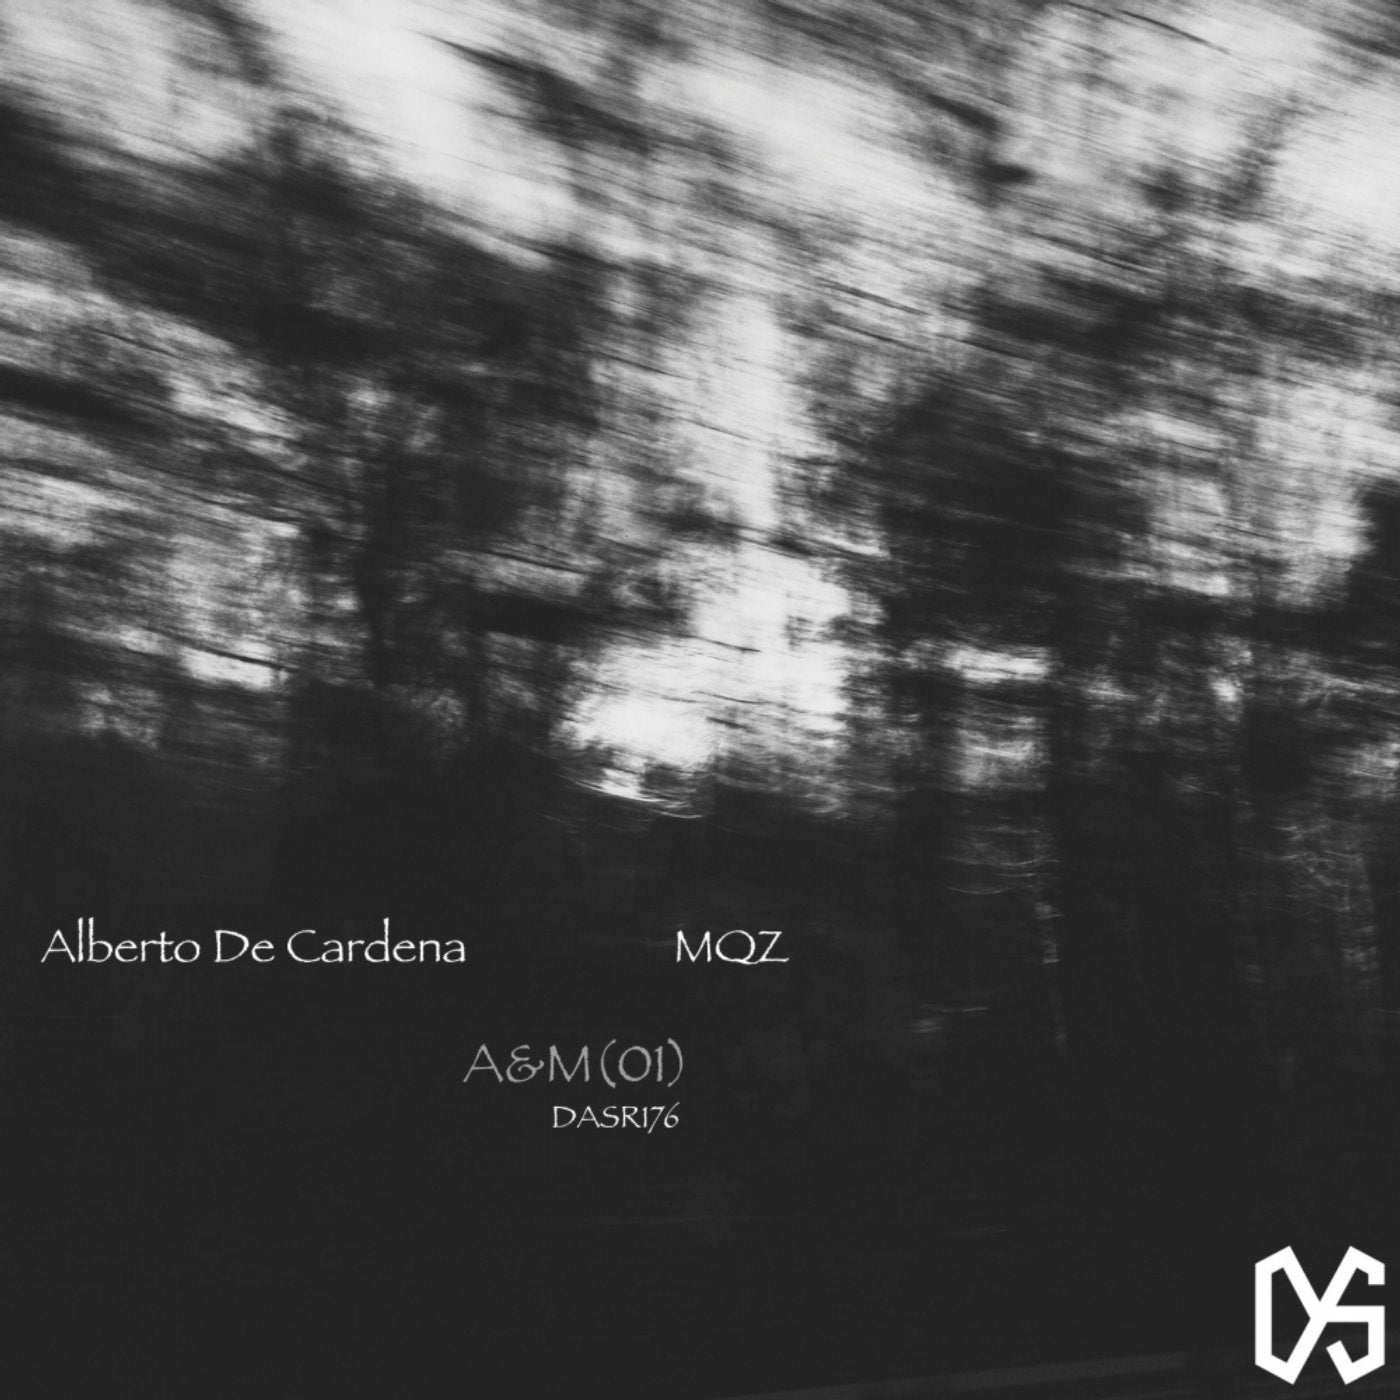 A&M(01)